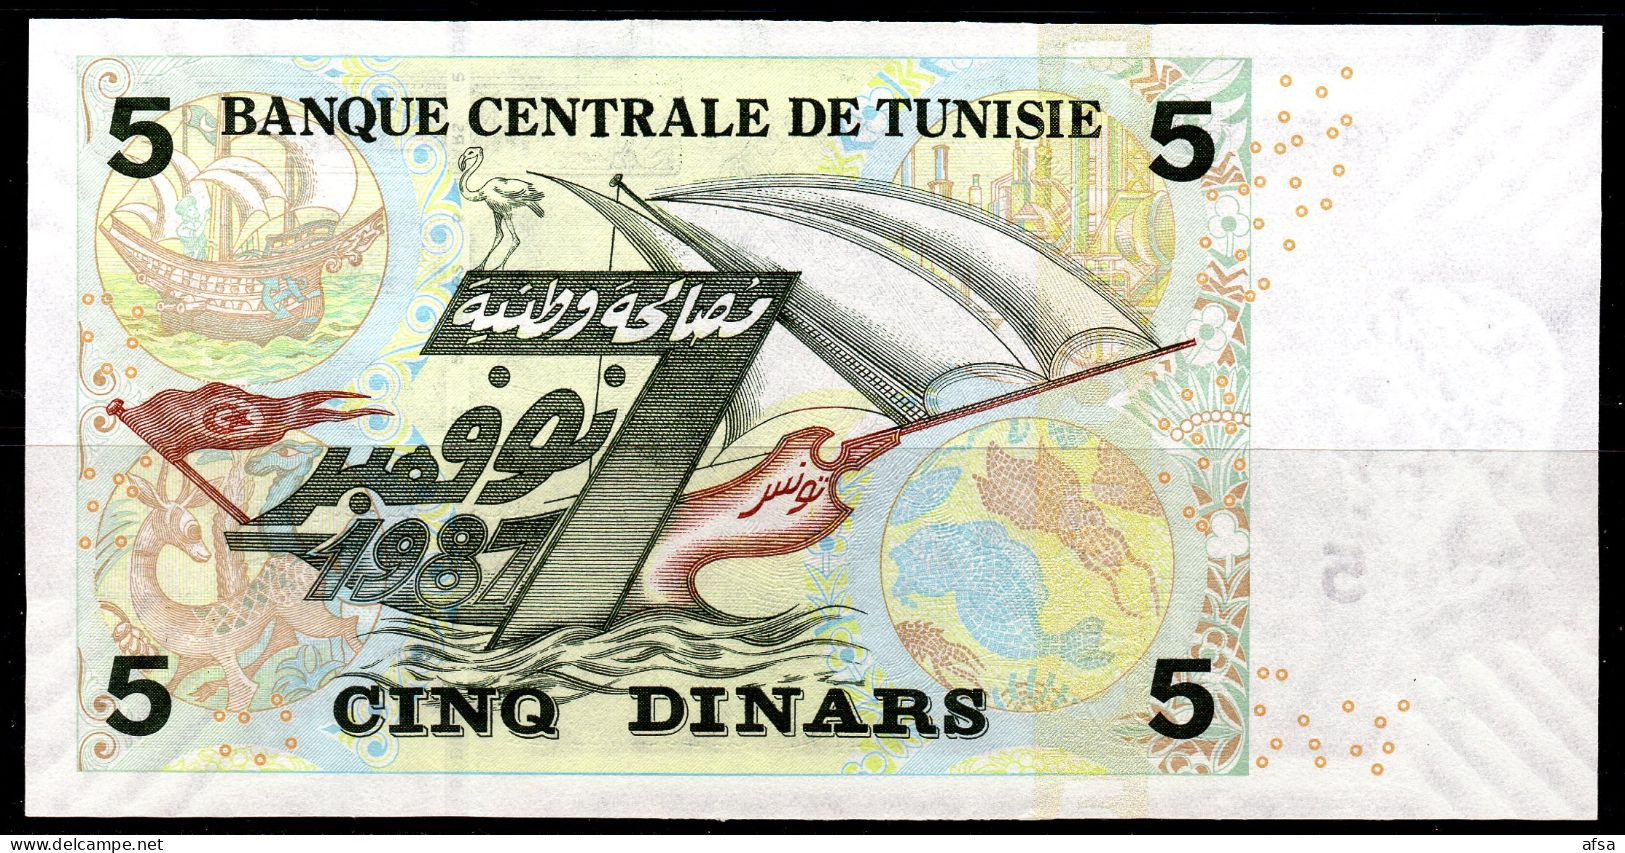 5 Dinars 2008 -P92-Neuf**- UNC** - 2 Scans -2 Images - Tunisia